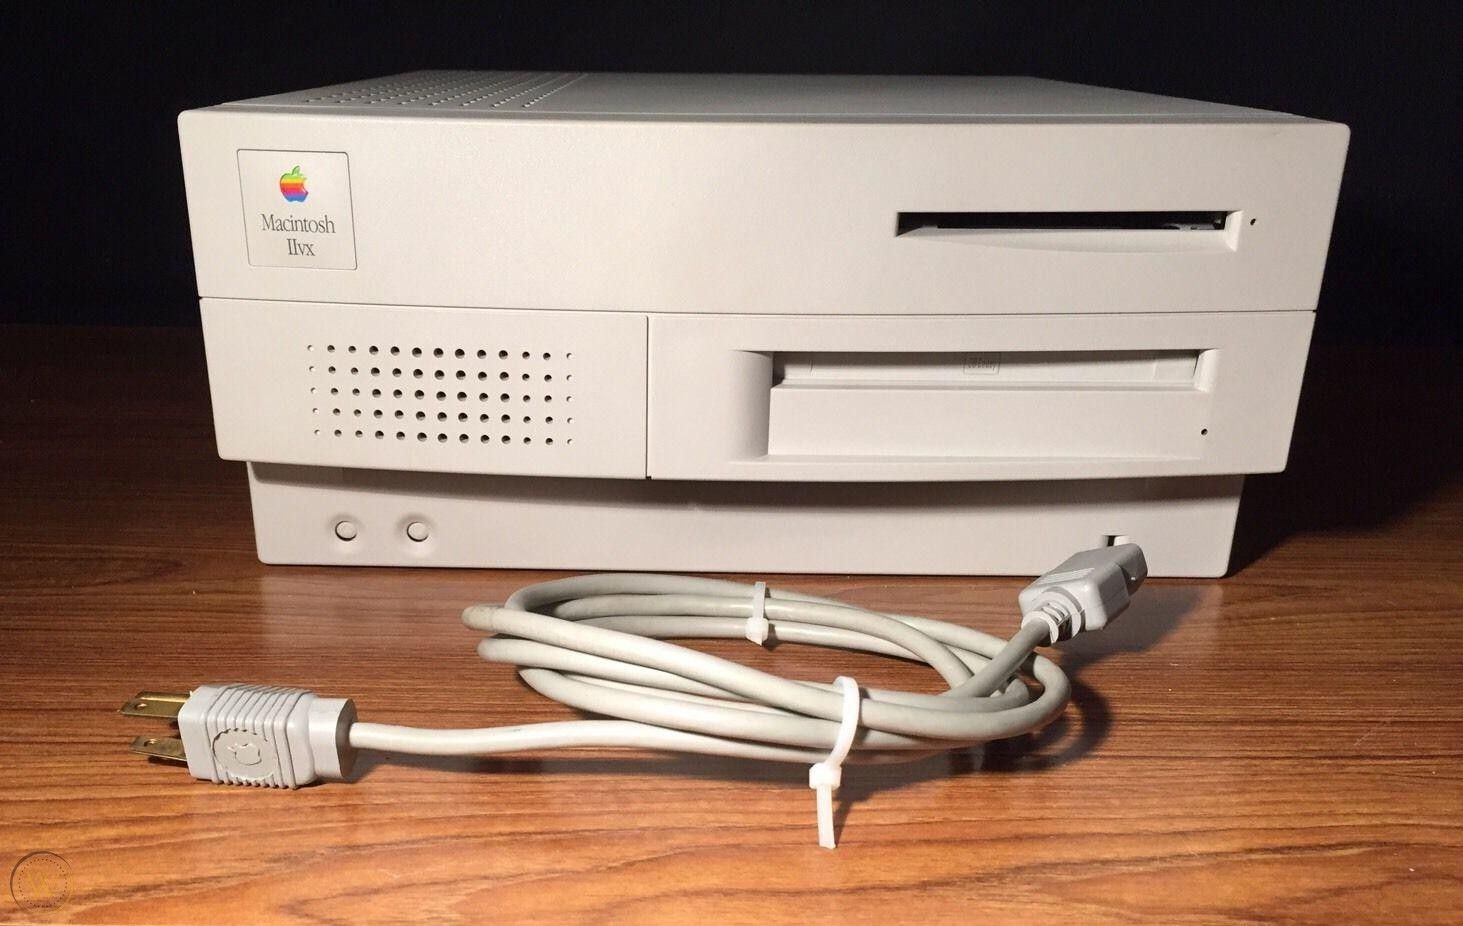 Этот день в истории Apple: компания выпускает Mac IIvx, первое устройство со встроенным CD-ROM